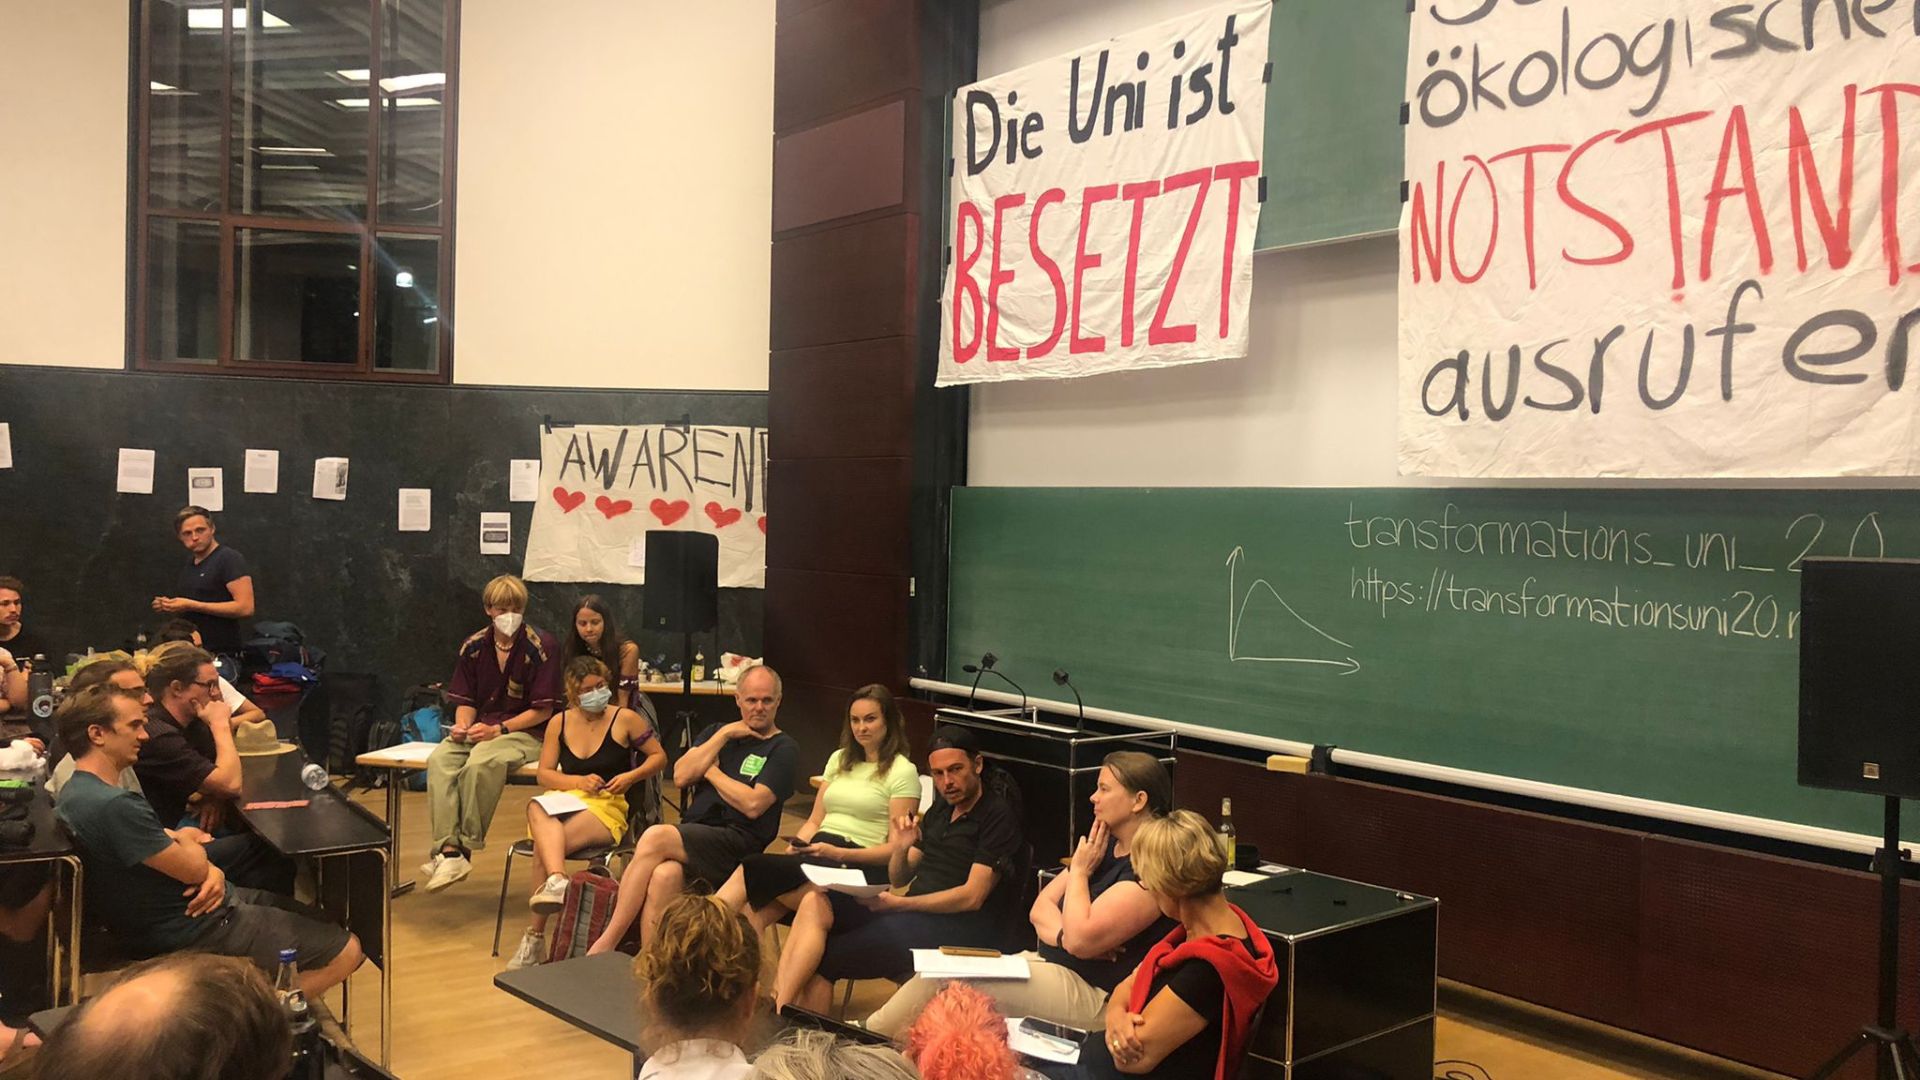 Des activistes allemands bloquent un amphithéâtre pour réclamer l’état d’urgence climatique